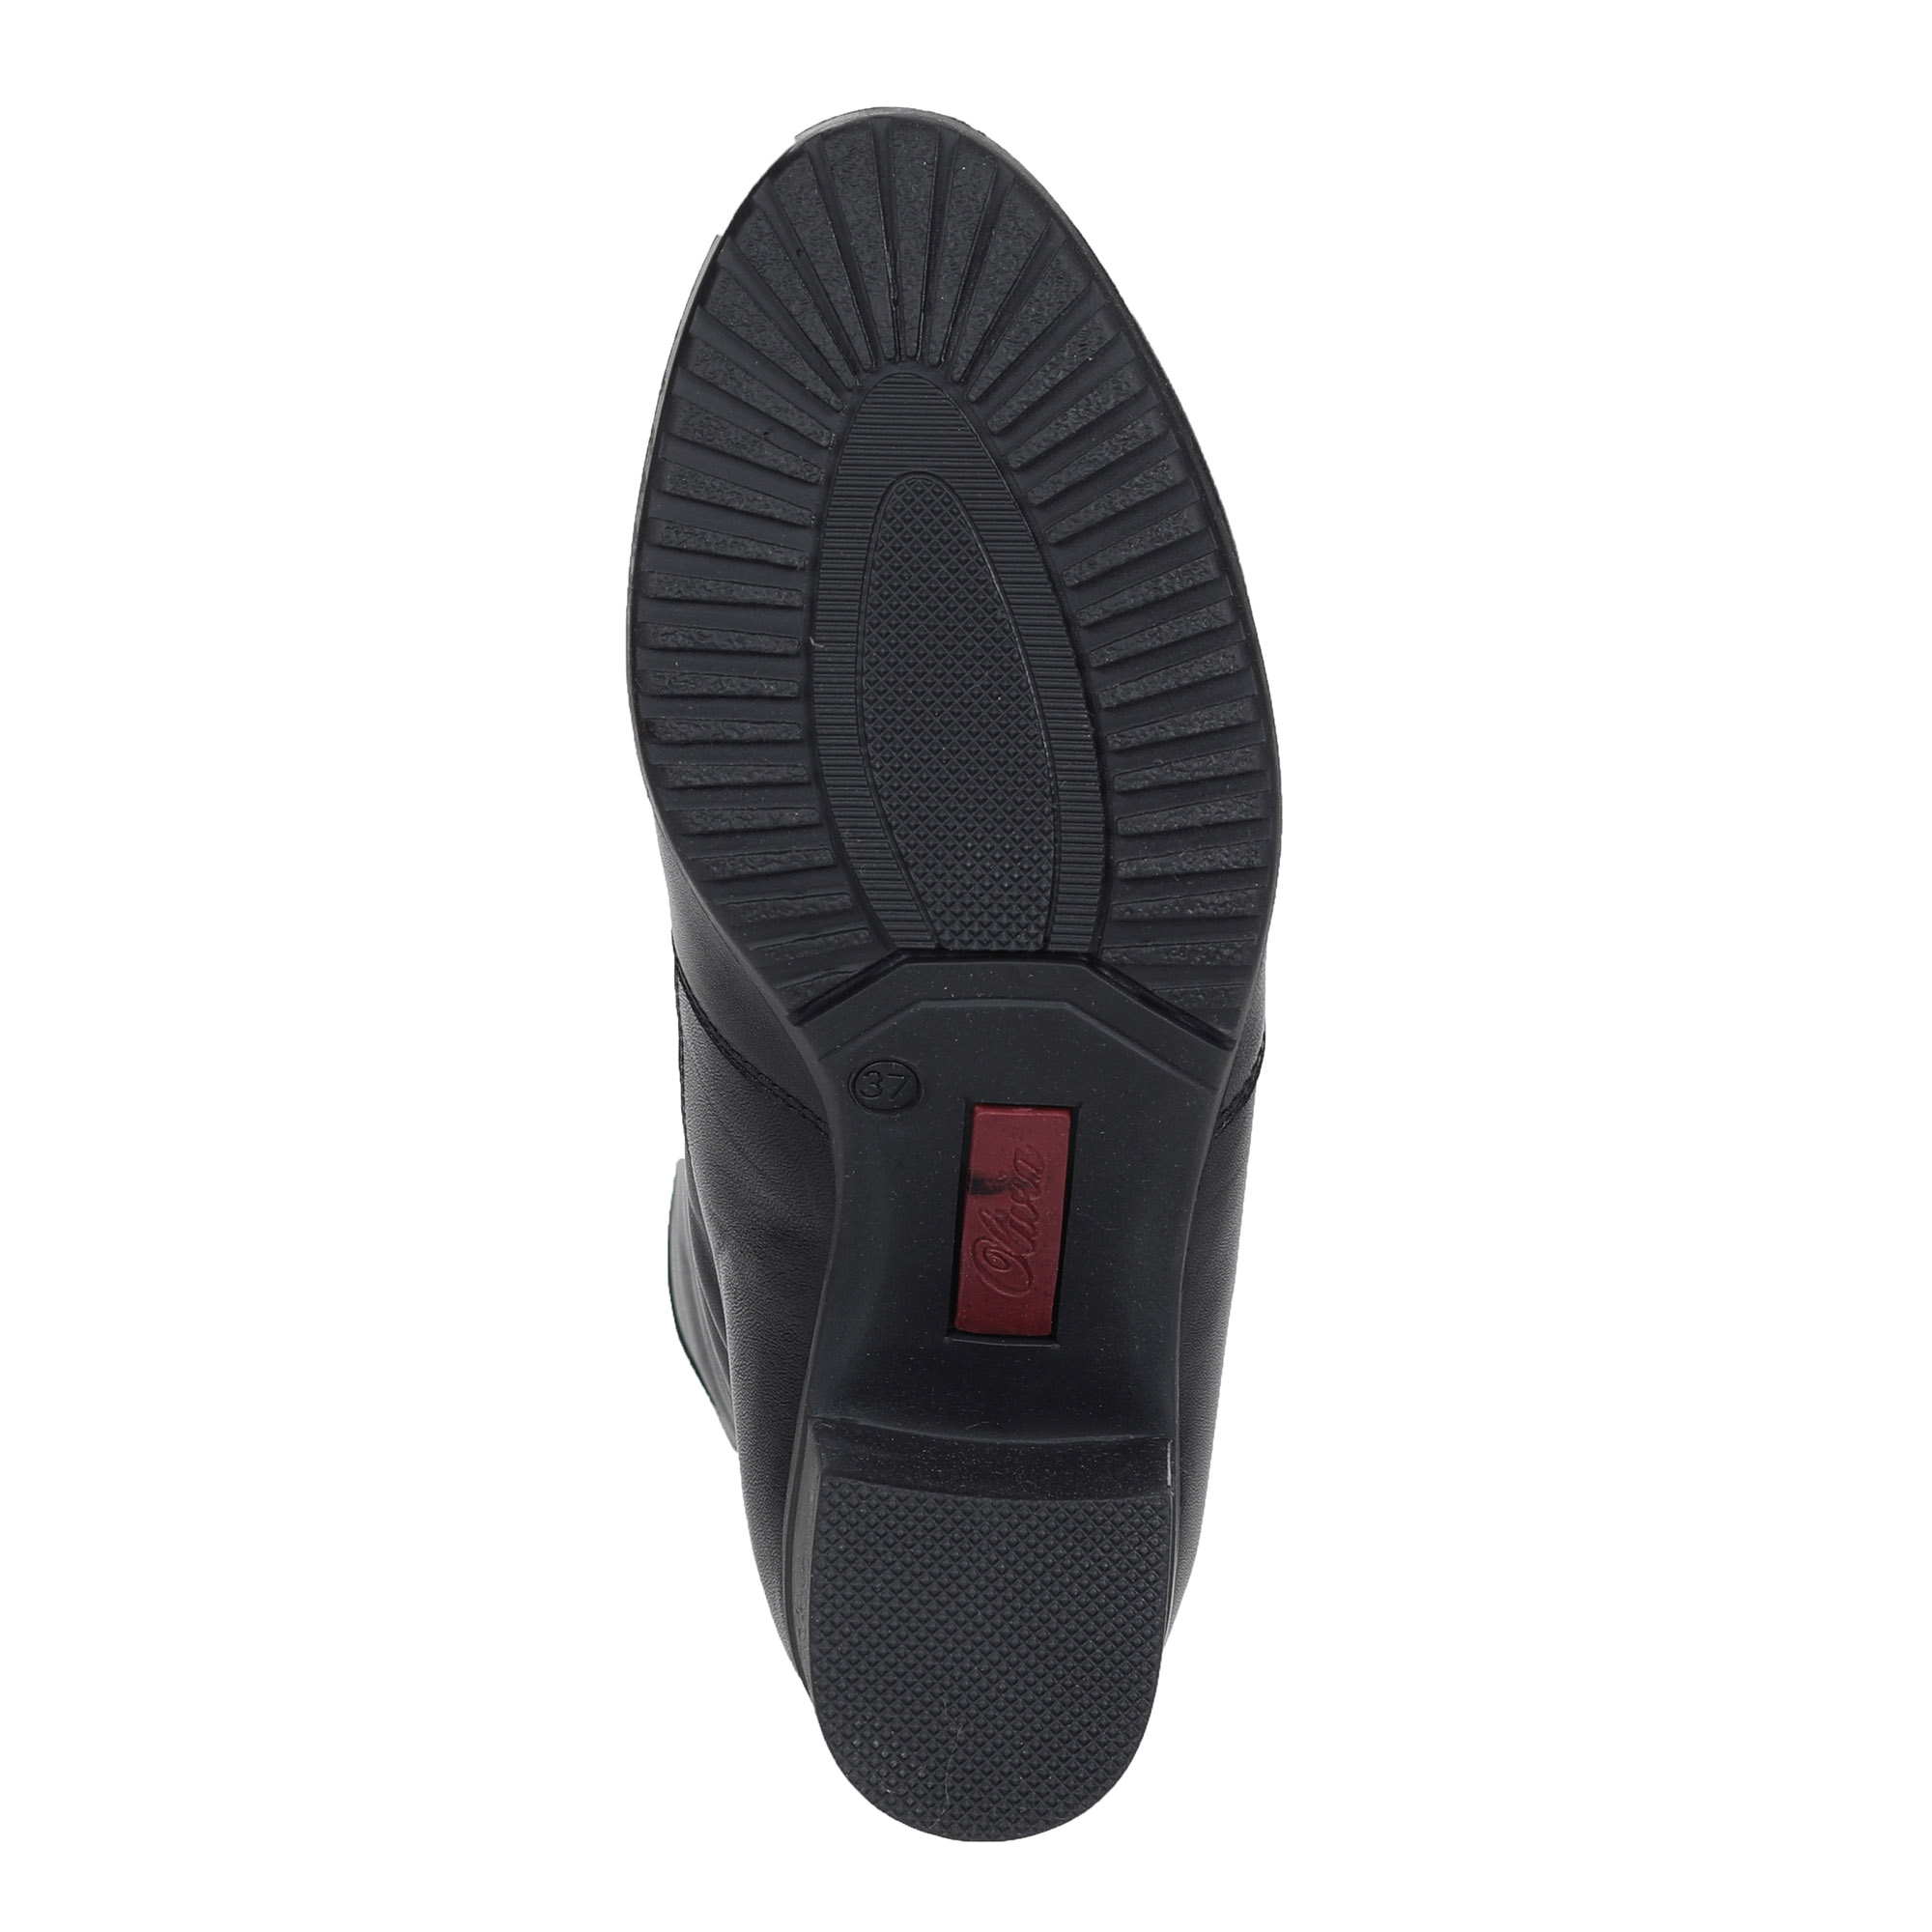 Черные сапоги из кожи на подкладке из натурального меха на устойчивом каблуке Olivia, размер 37, цвет черный - фото 7